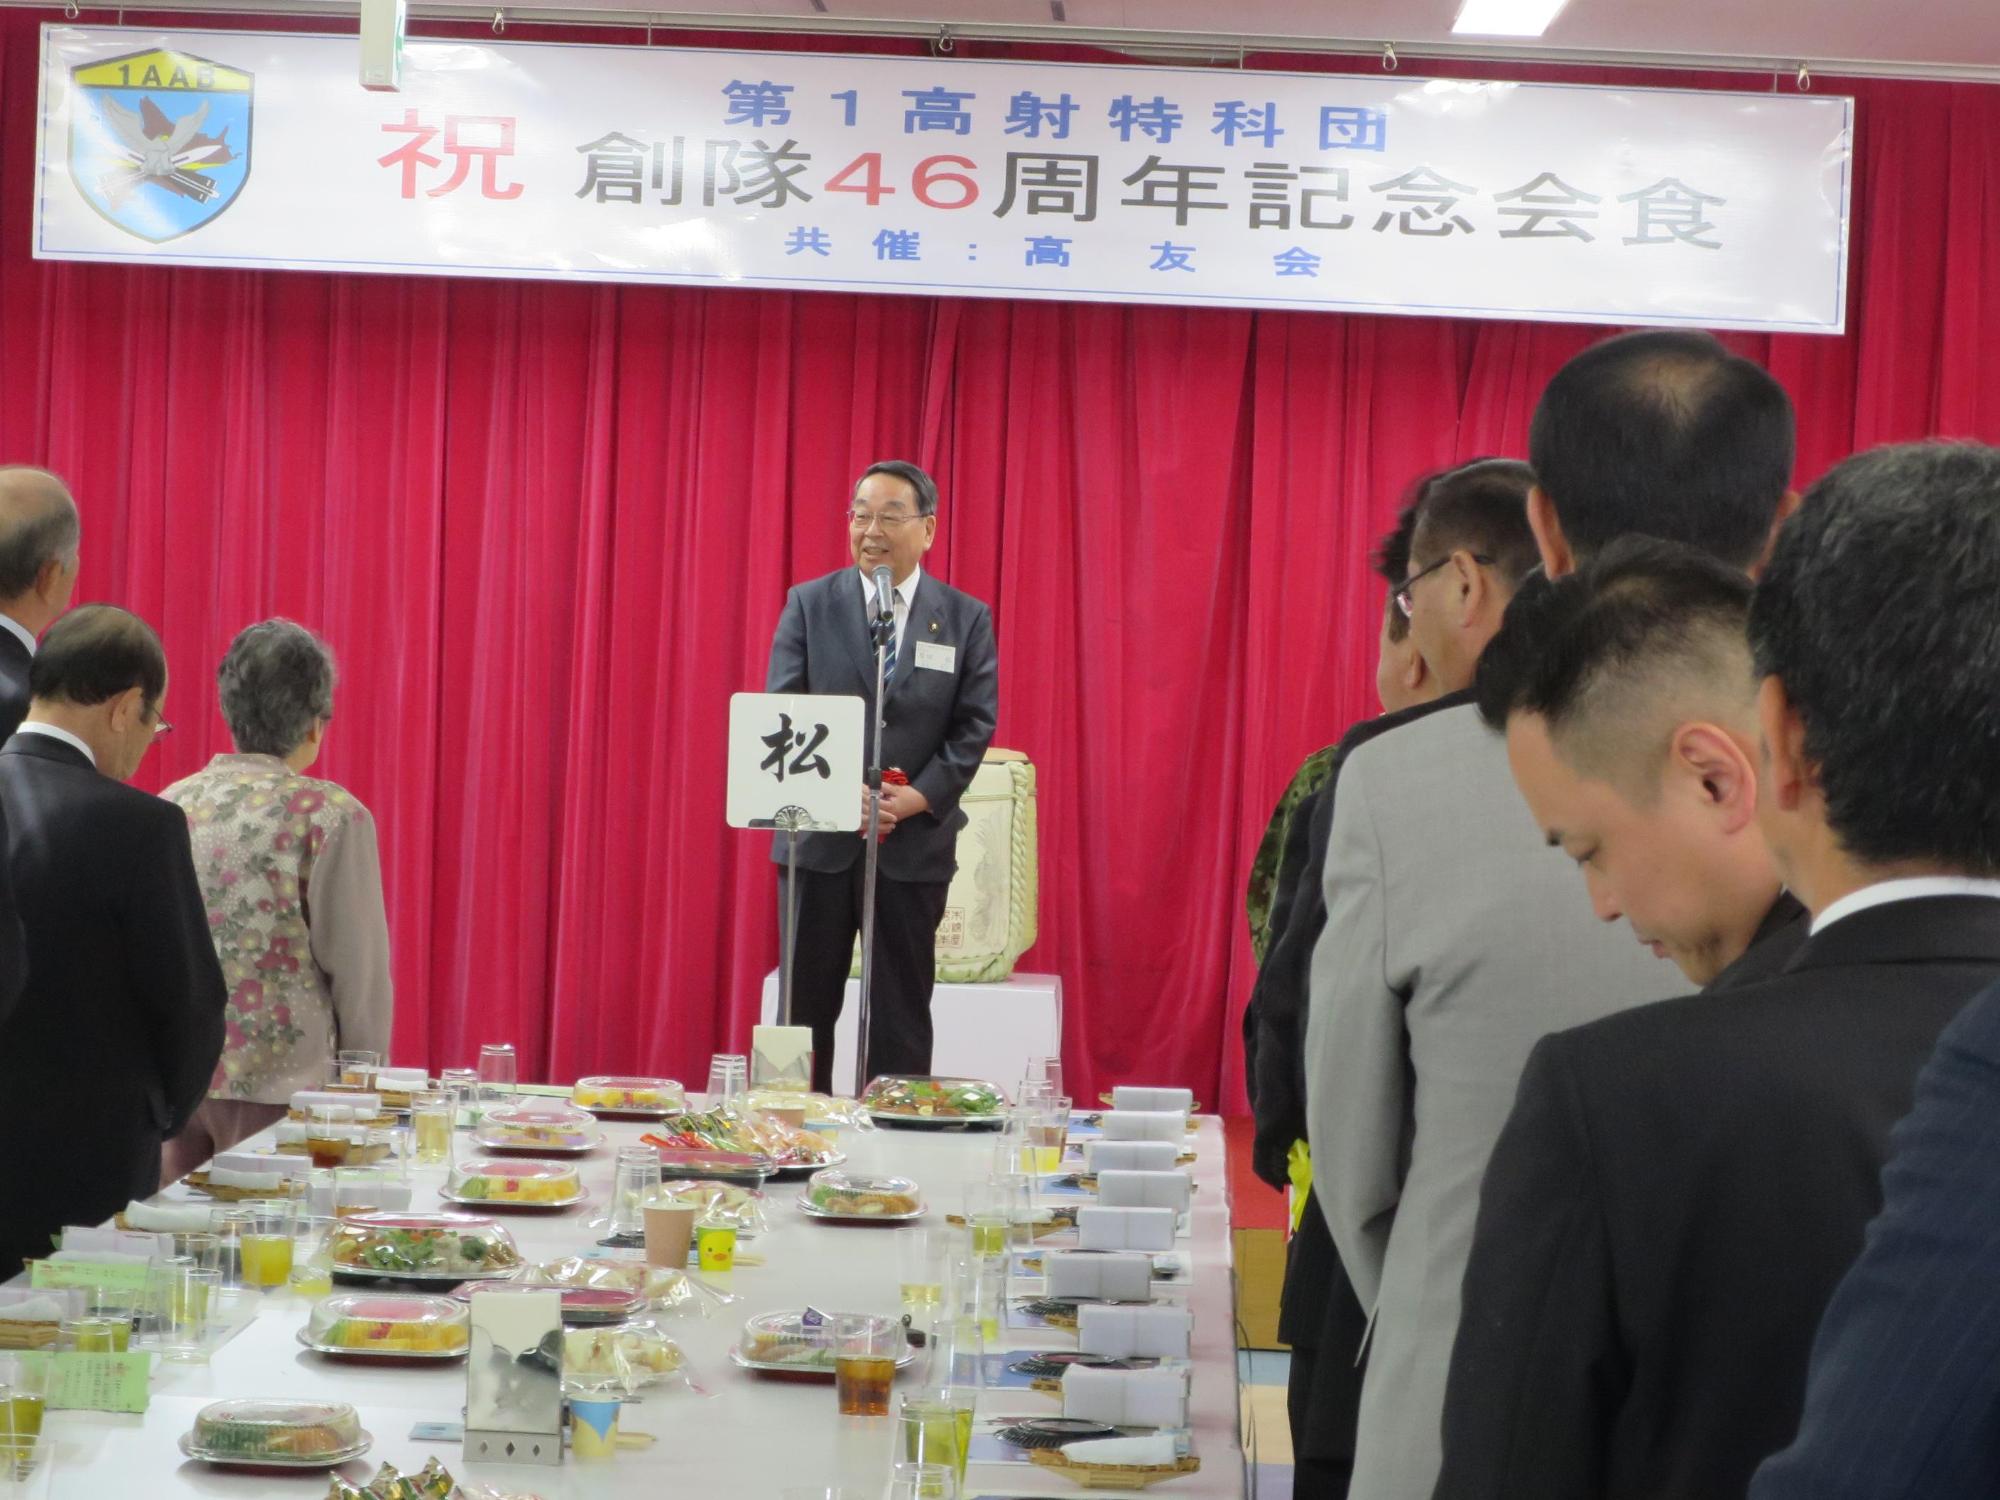 「第1高射特科団創隊記念行事」にて挨拶をしている原田市長の写真